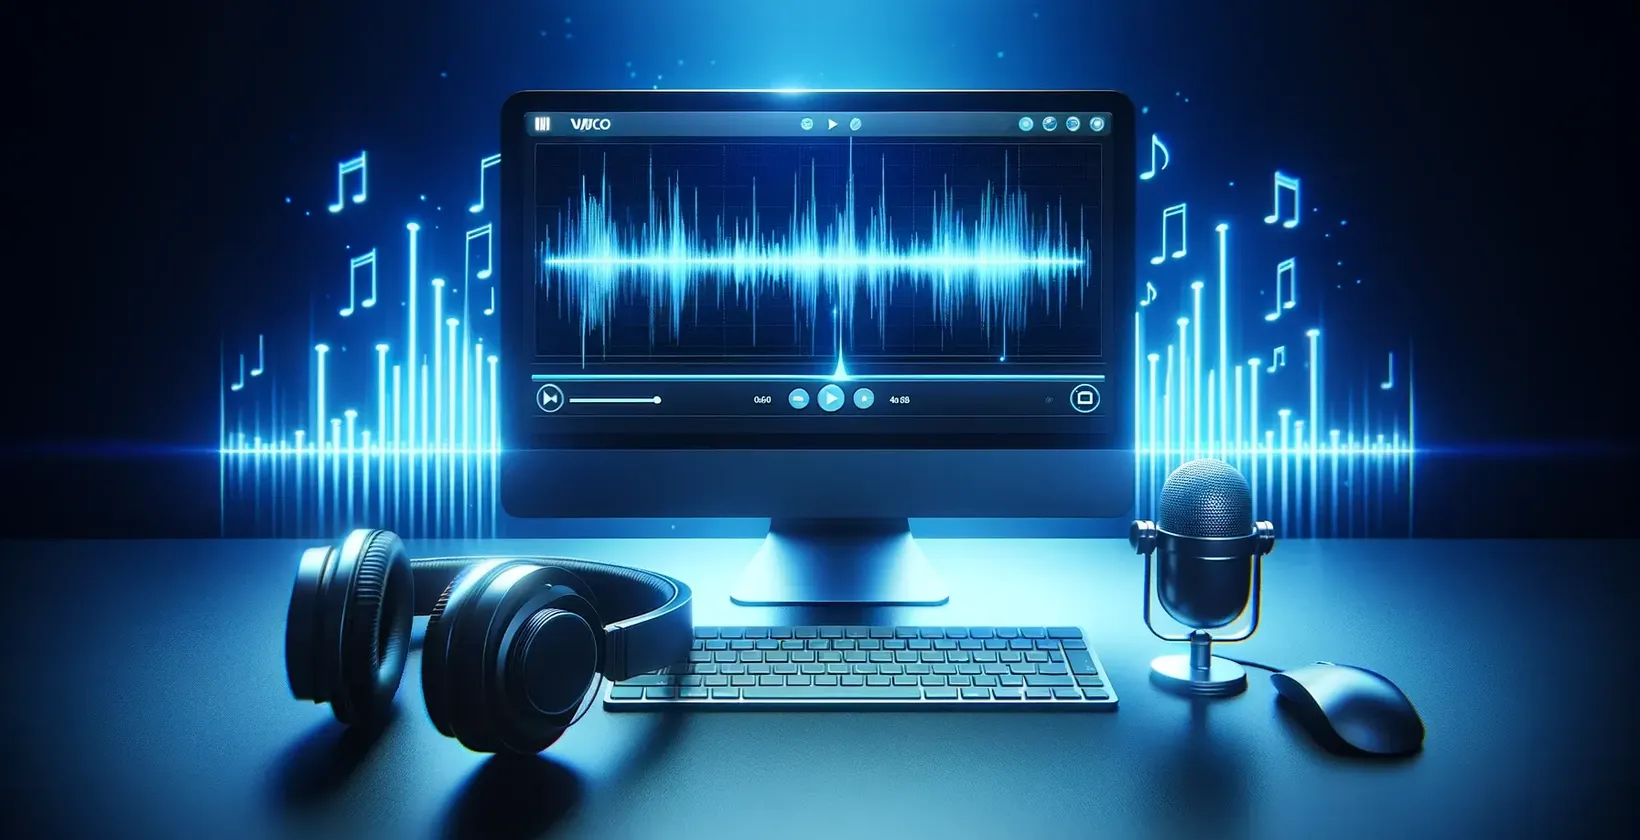 תוכנת תמלול אוטומטית המוצגת בסביבת עבודה דיגיטלית עם מחשב, אוזניות ומיקרופון שולחני.